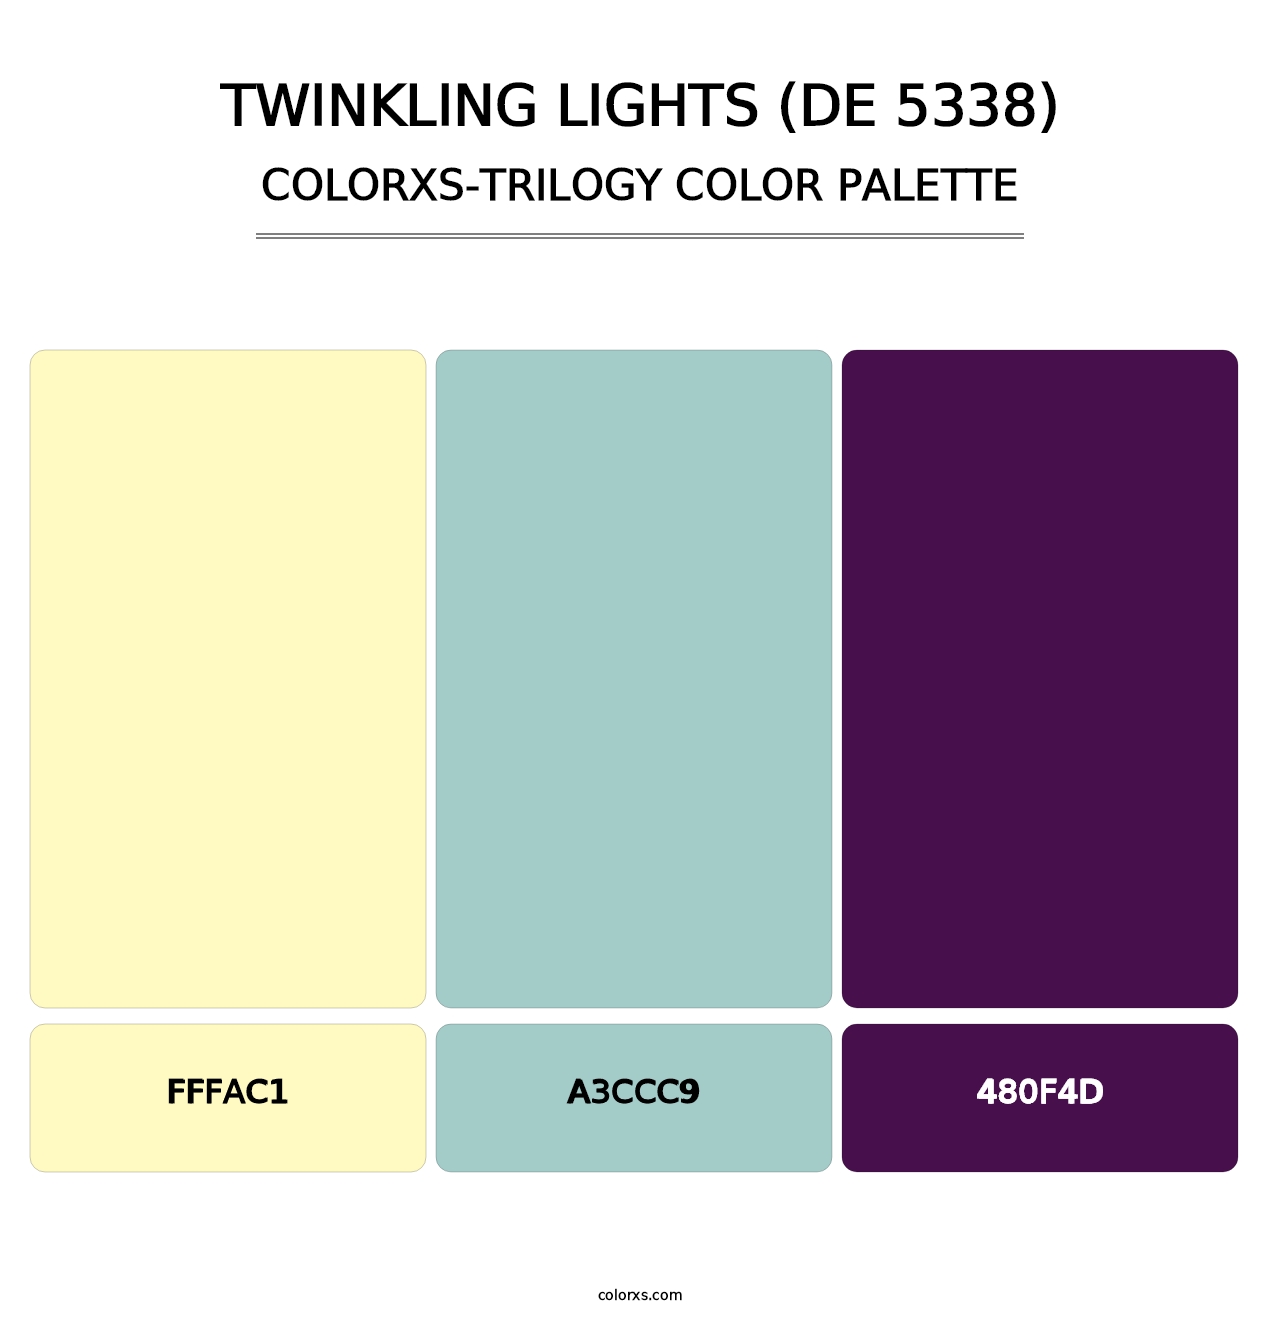 Twinkling Lights (DE 5338) - Colorxs Trilogy Palette